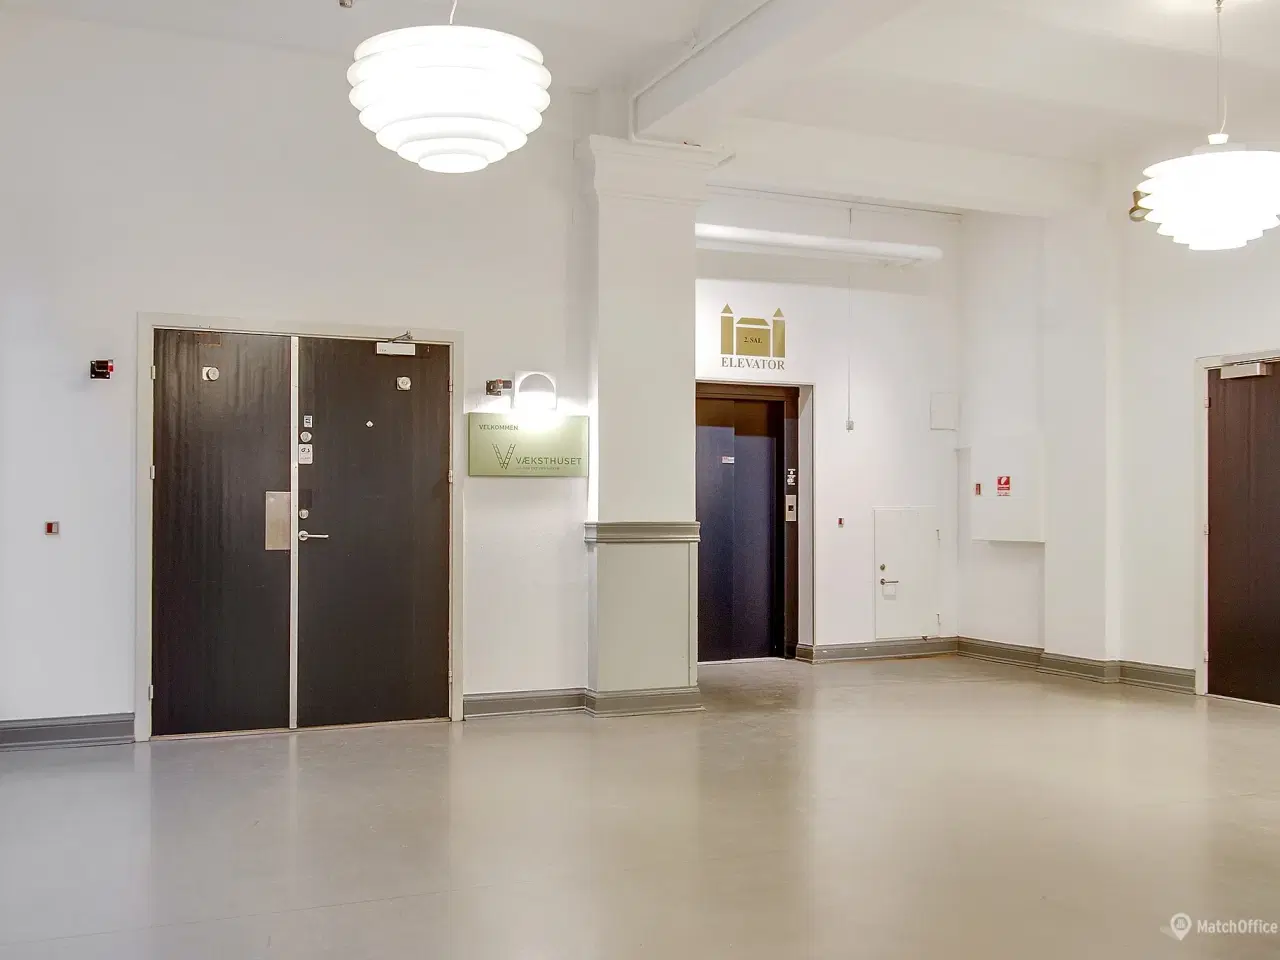 Billede 15 - 339 m² storrumskontor med flere kontorer og mødelokaler udlejes i Kongensgade i Odense City